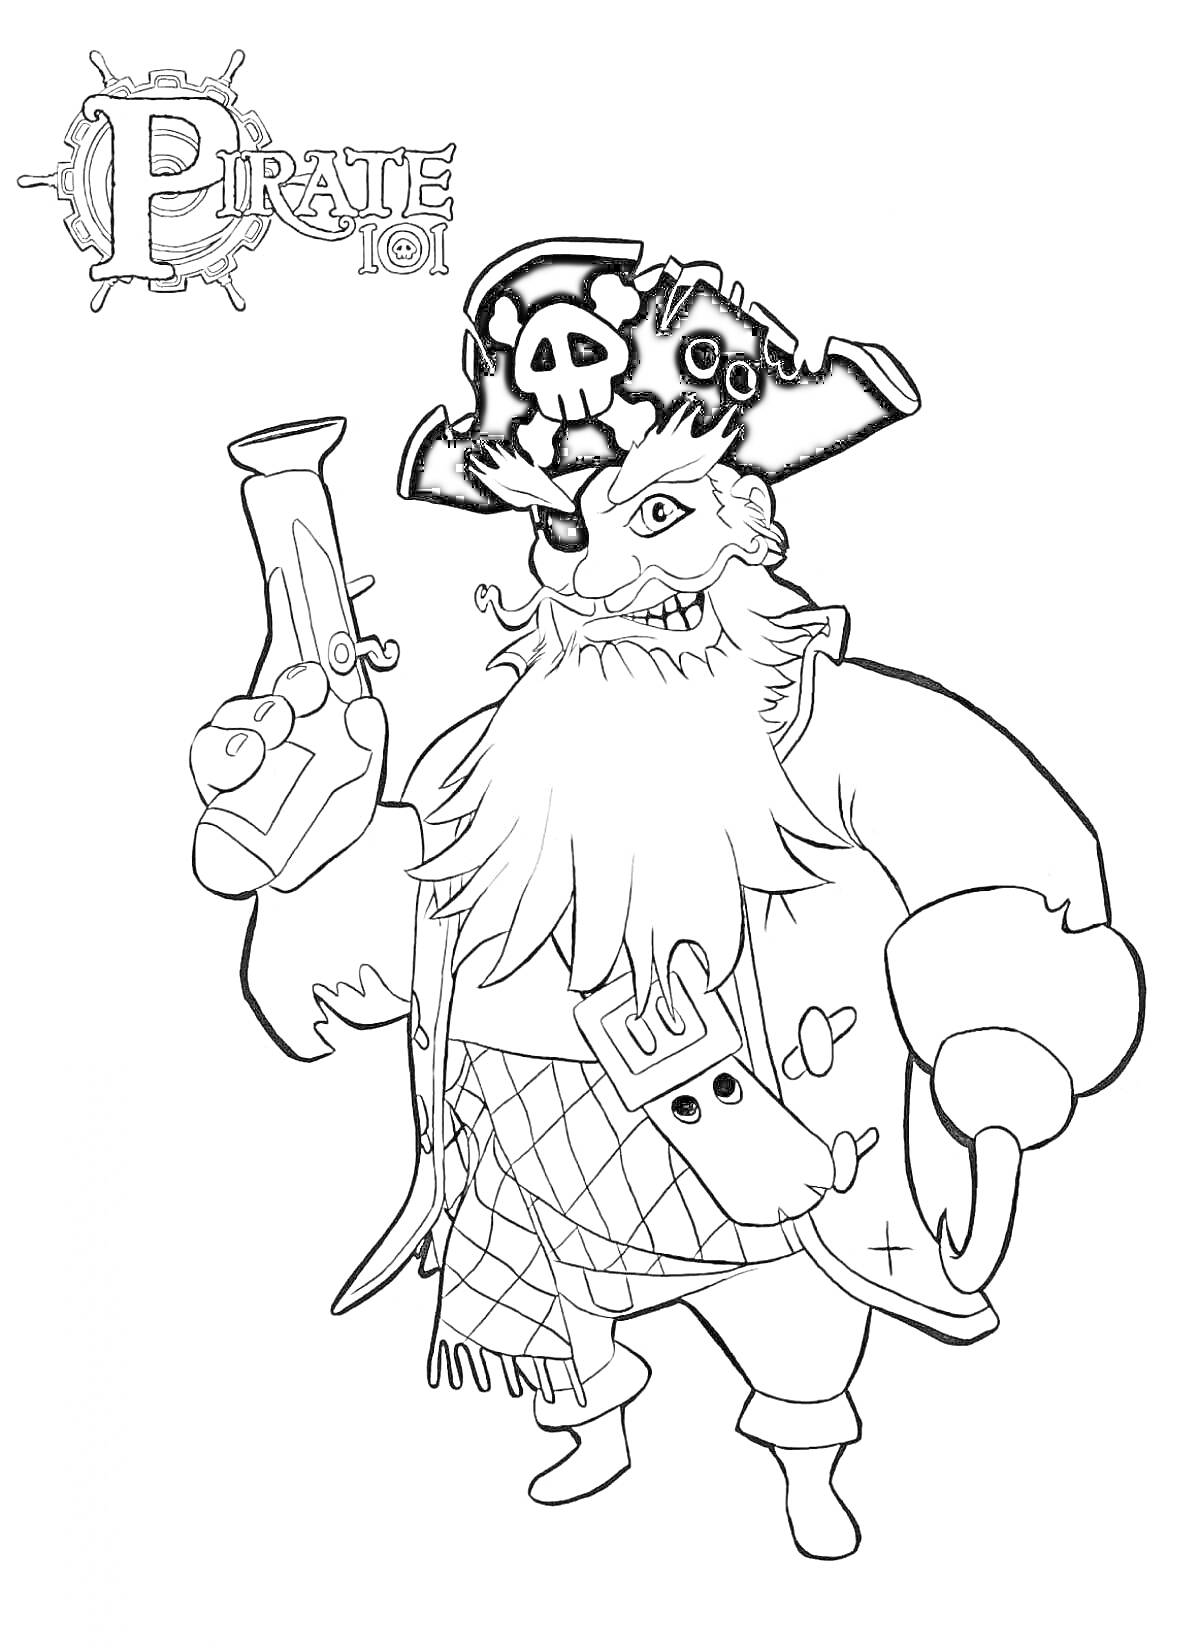 На раскраске изображено: Разбойник, Пистолет, Череп и кости, Пиратская шляпа, Борода, Крюк